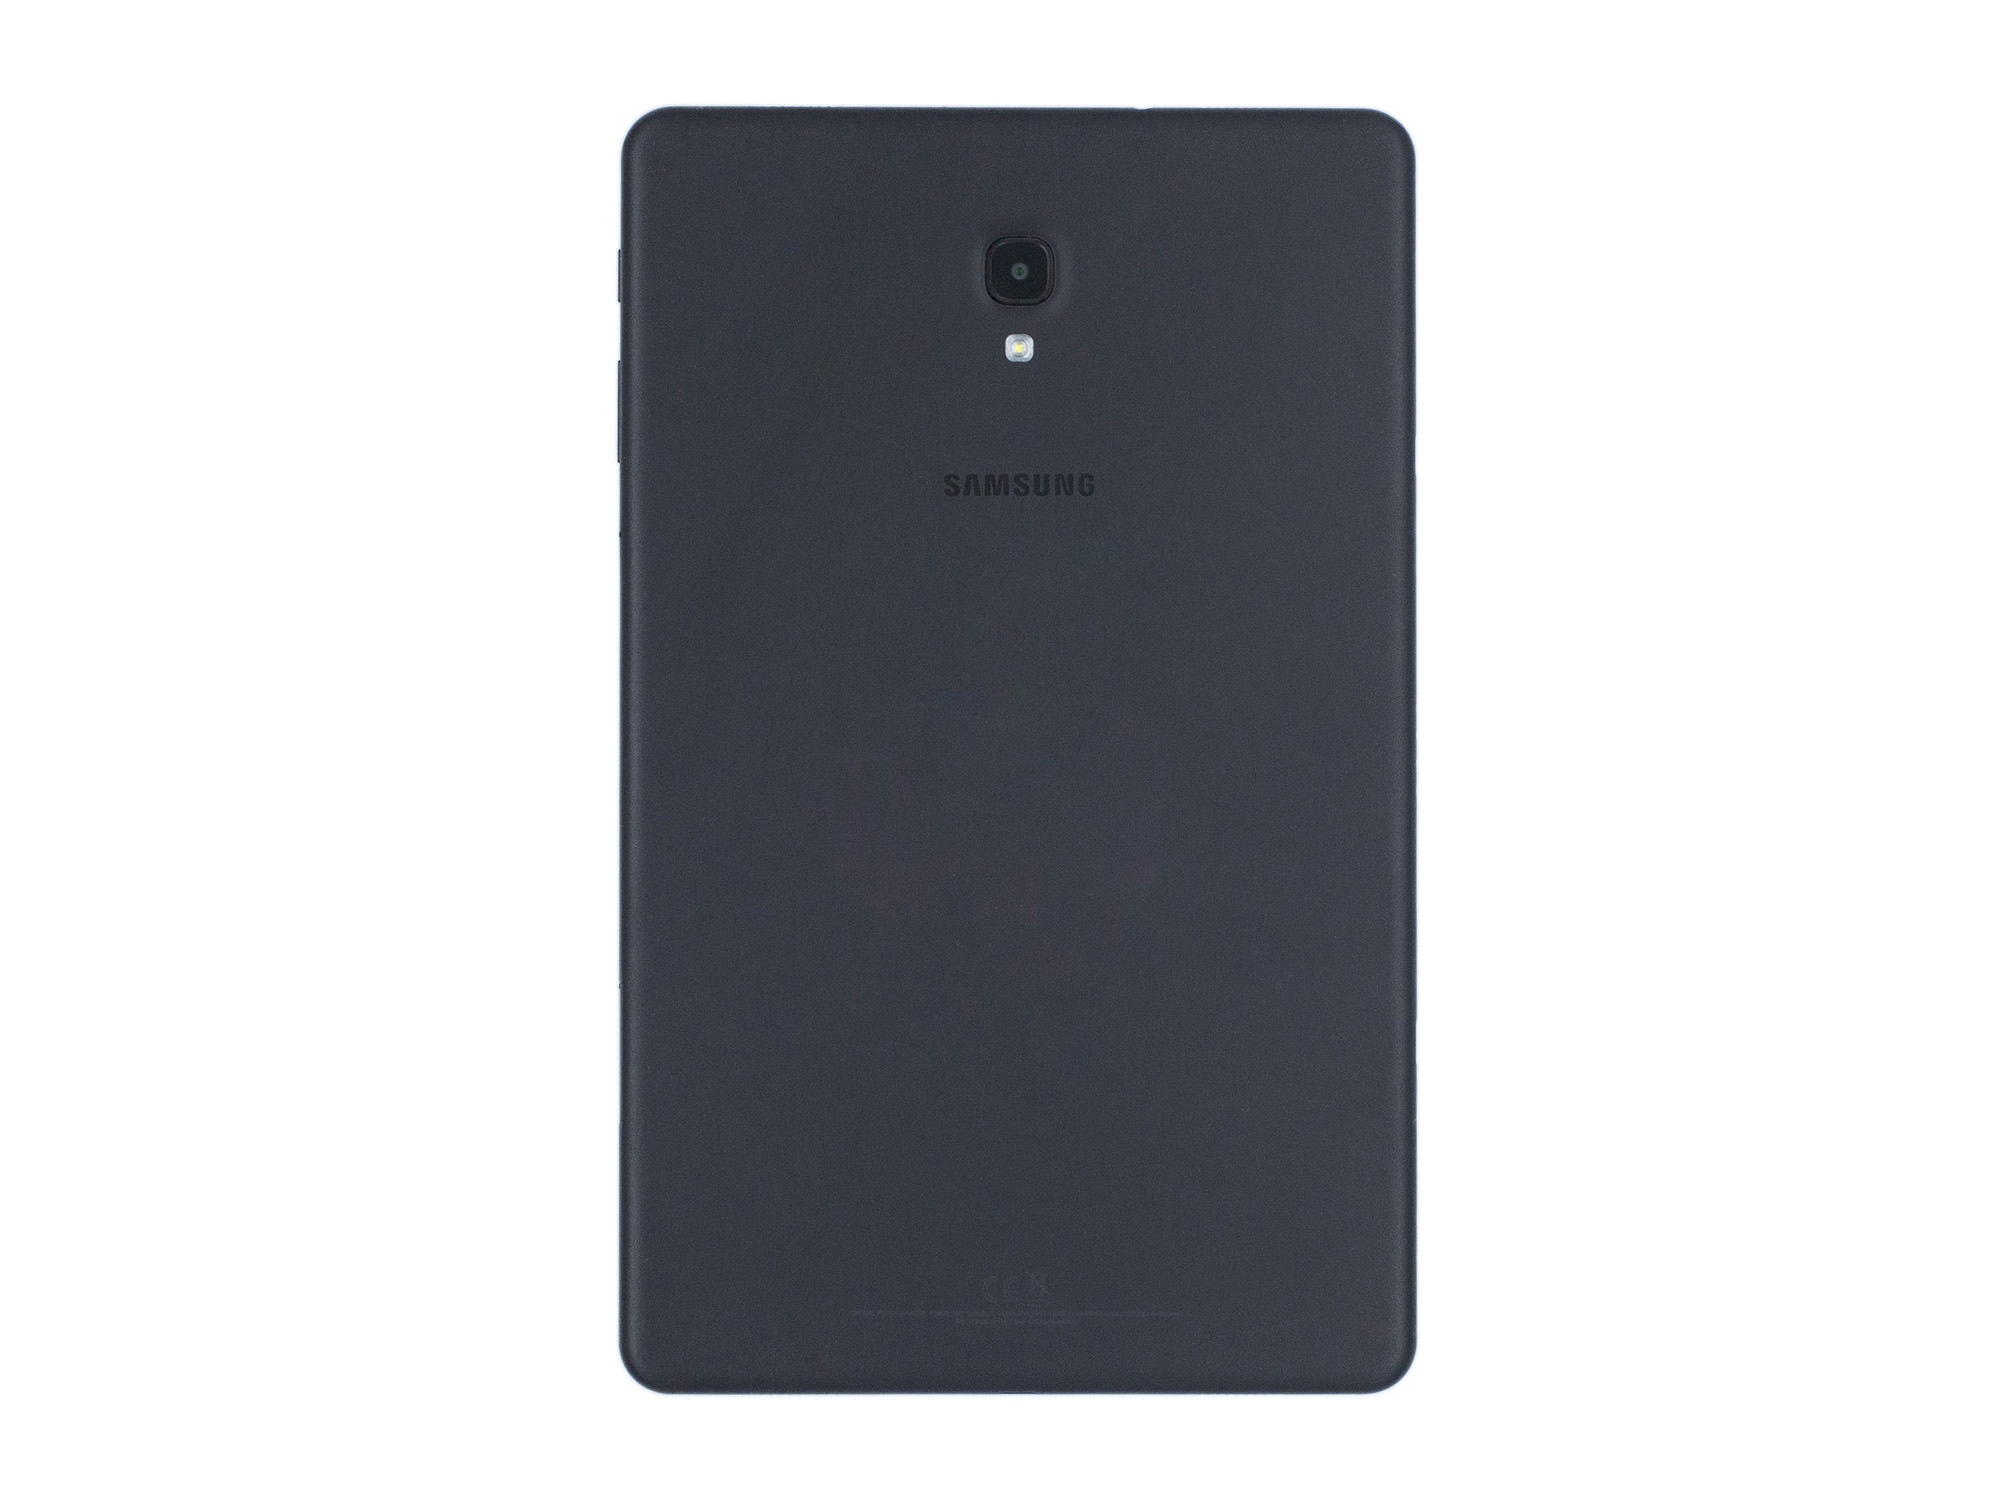 Samsung Galaxy Tab A 10.5 T595 (2018) 32GB 10,5" WIFI+Cellular black hervorragend